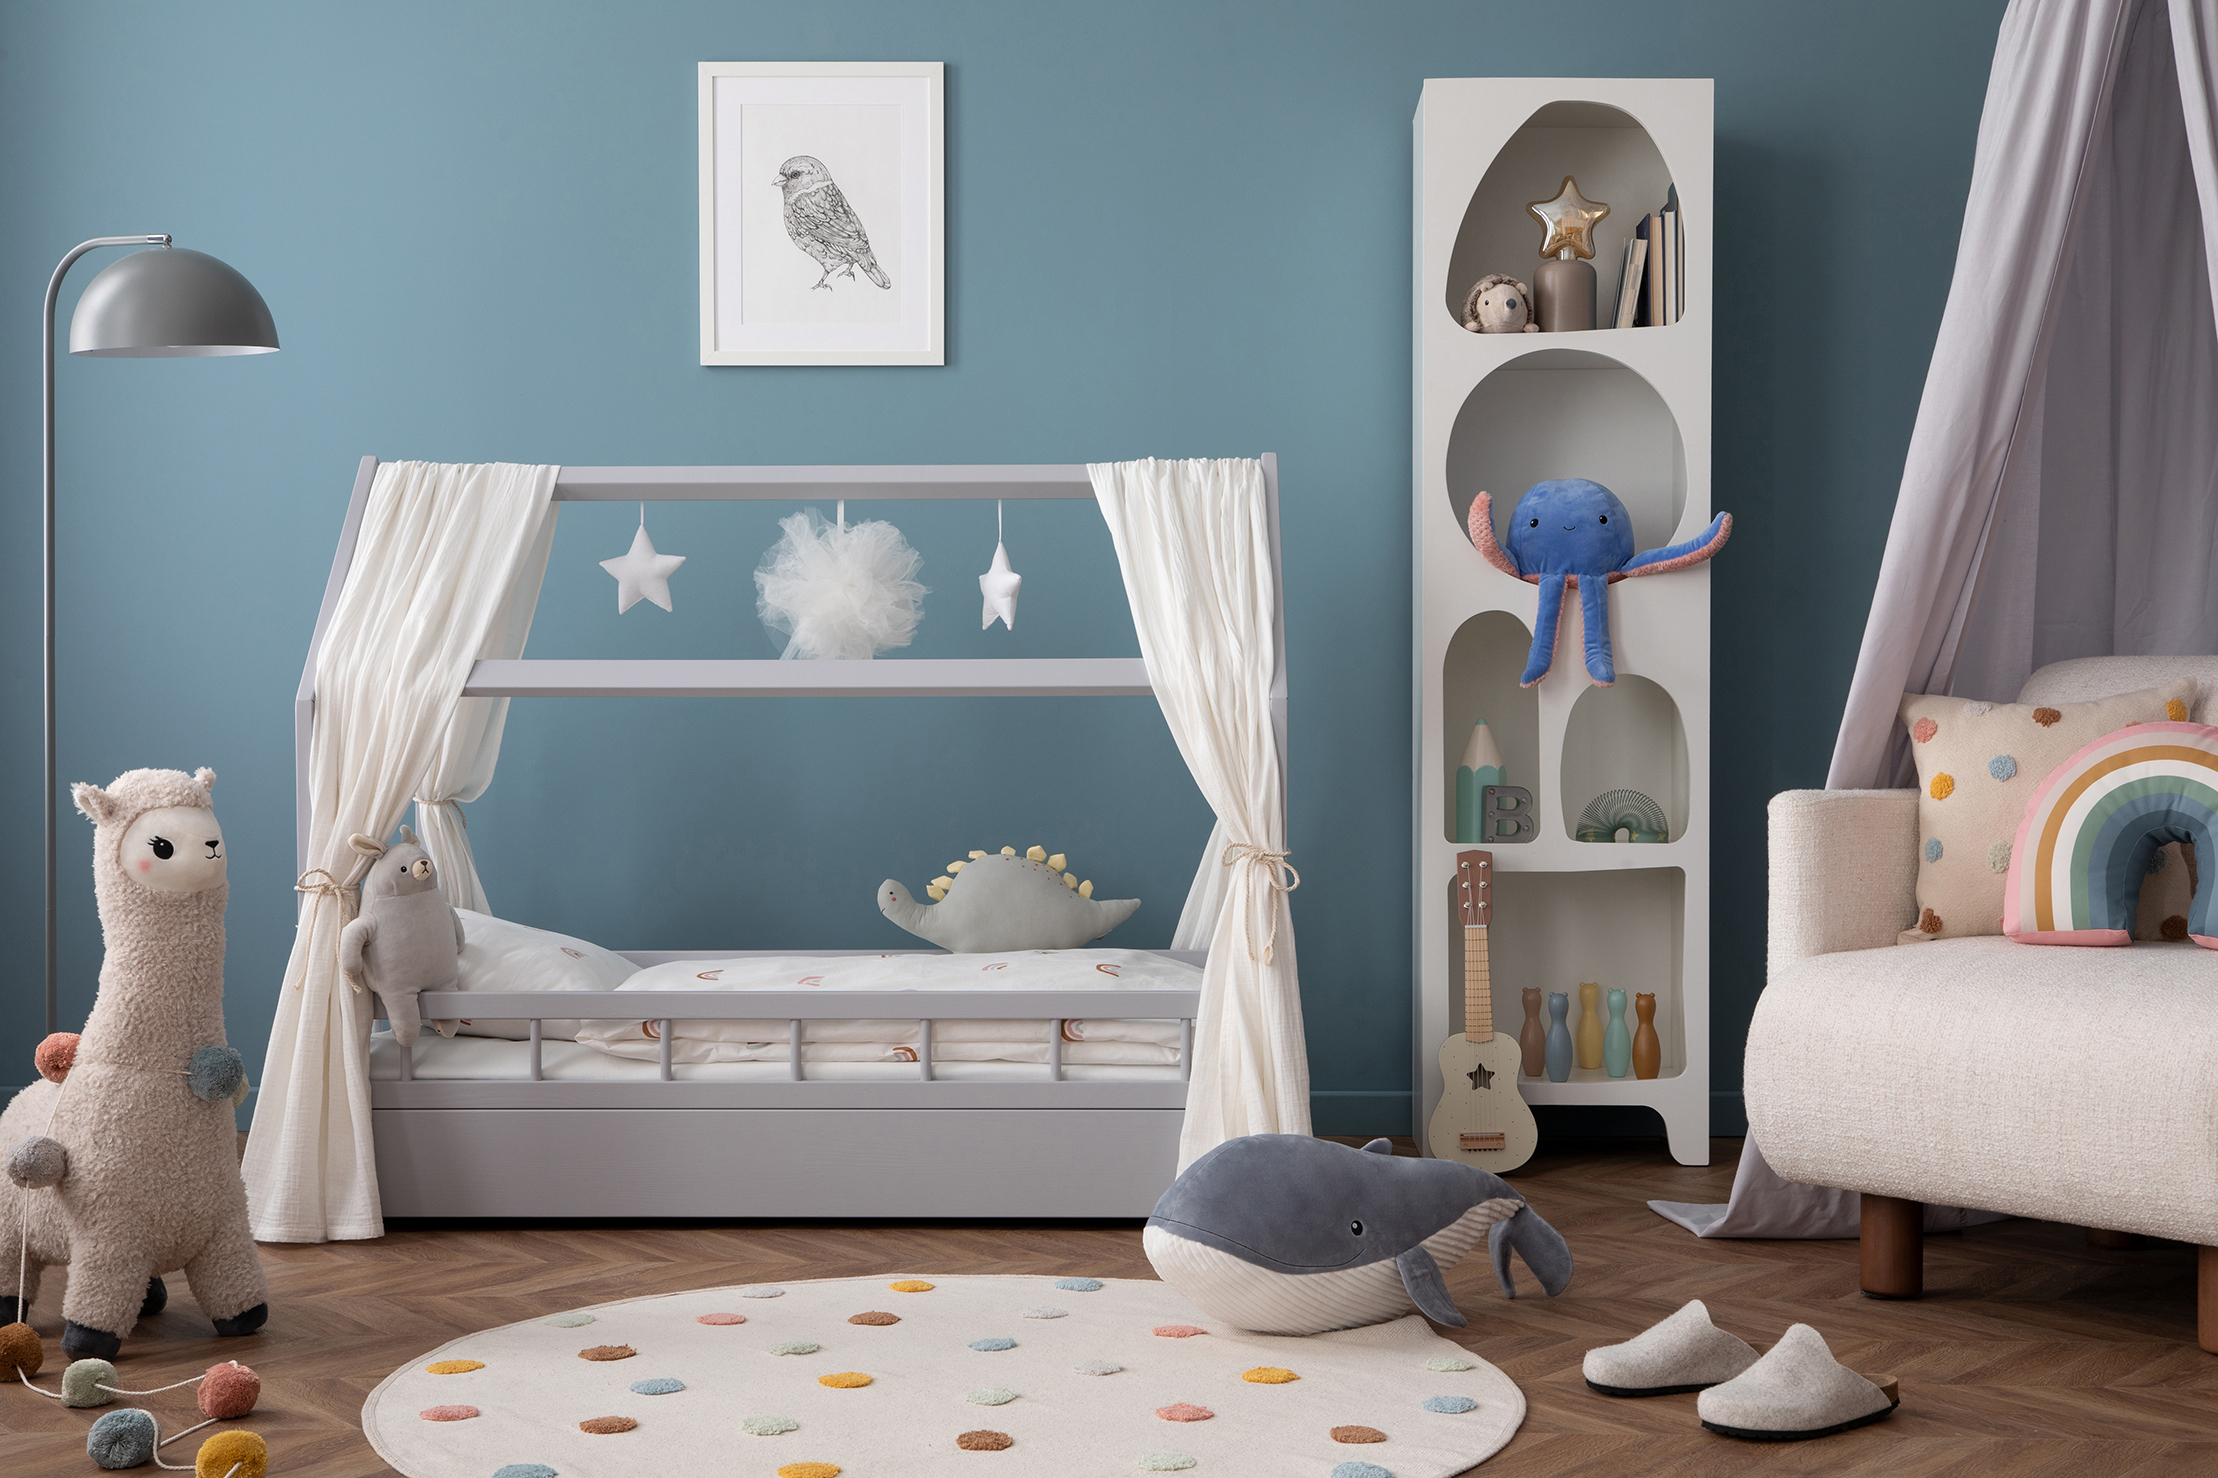 Łóżko domek jako element aranżacji pokoju dziecka